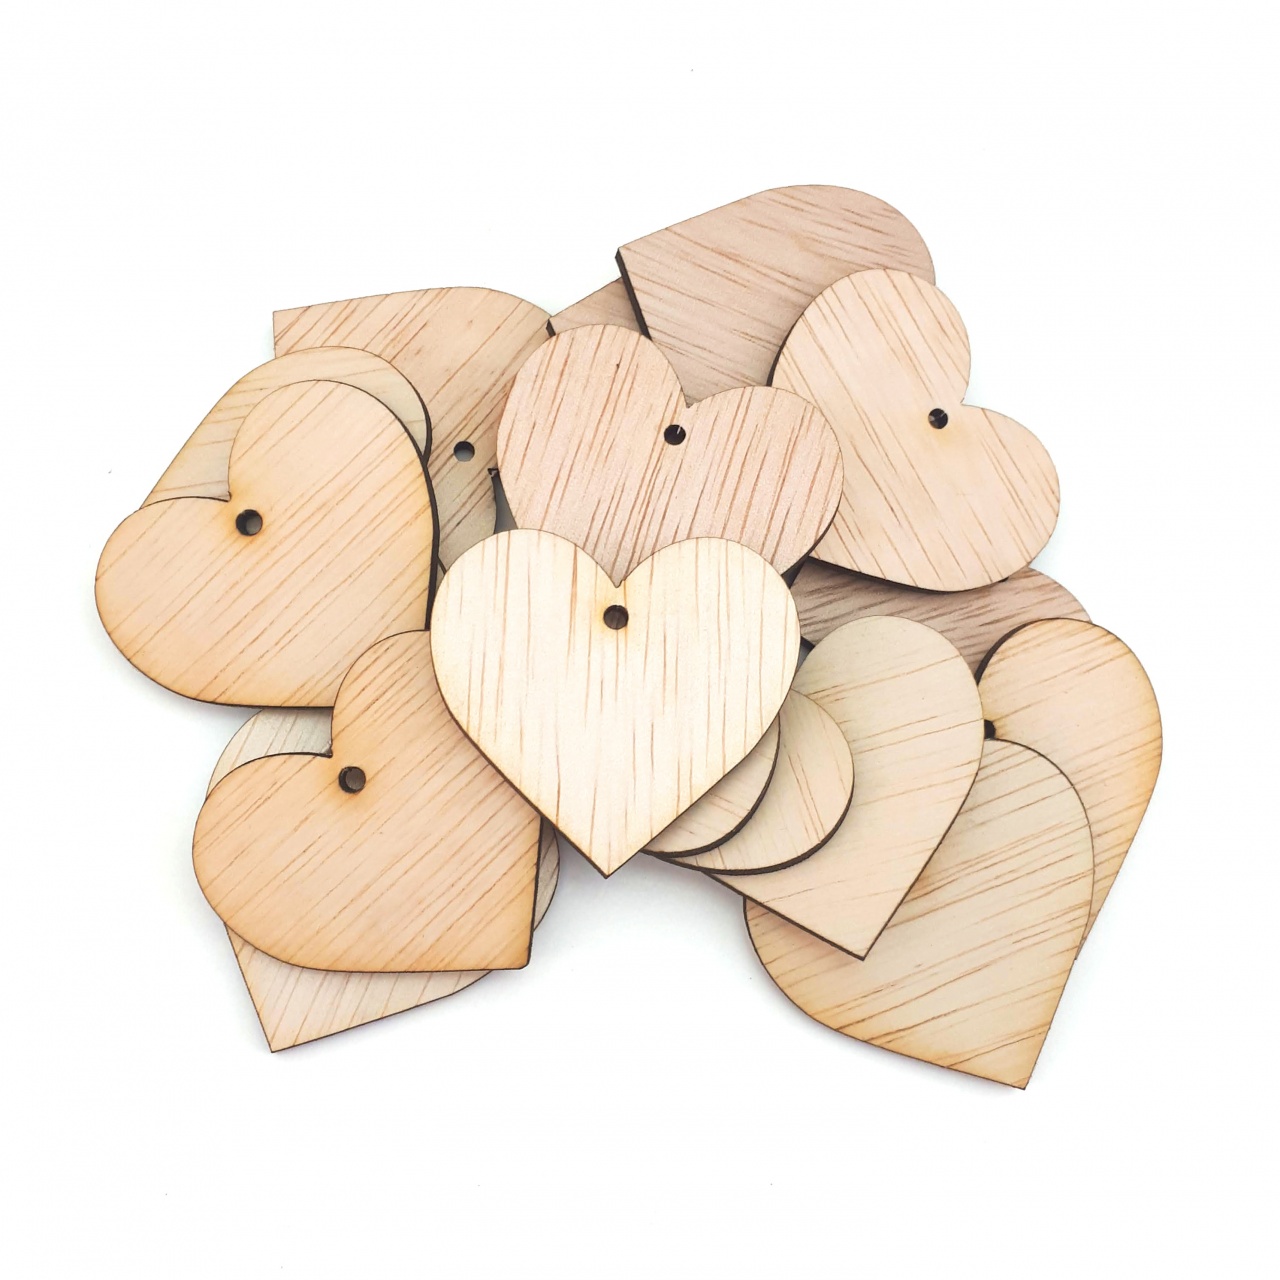 Inimă, 4.5×4.2 cm, placaj lemn natur :: 4,5 cm